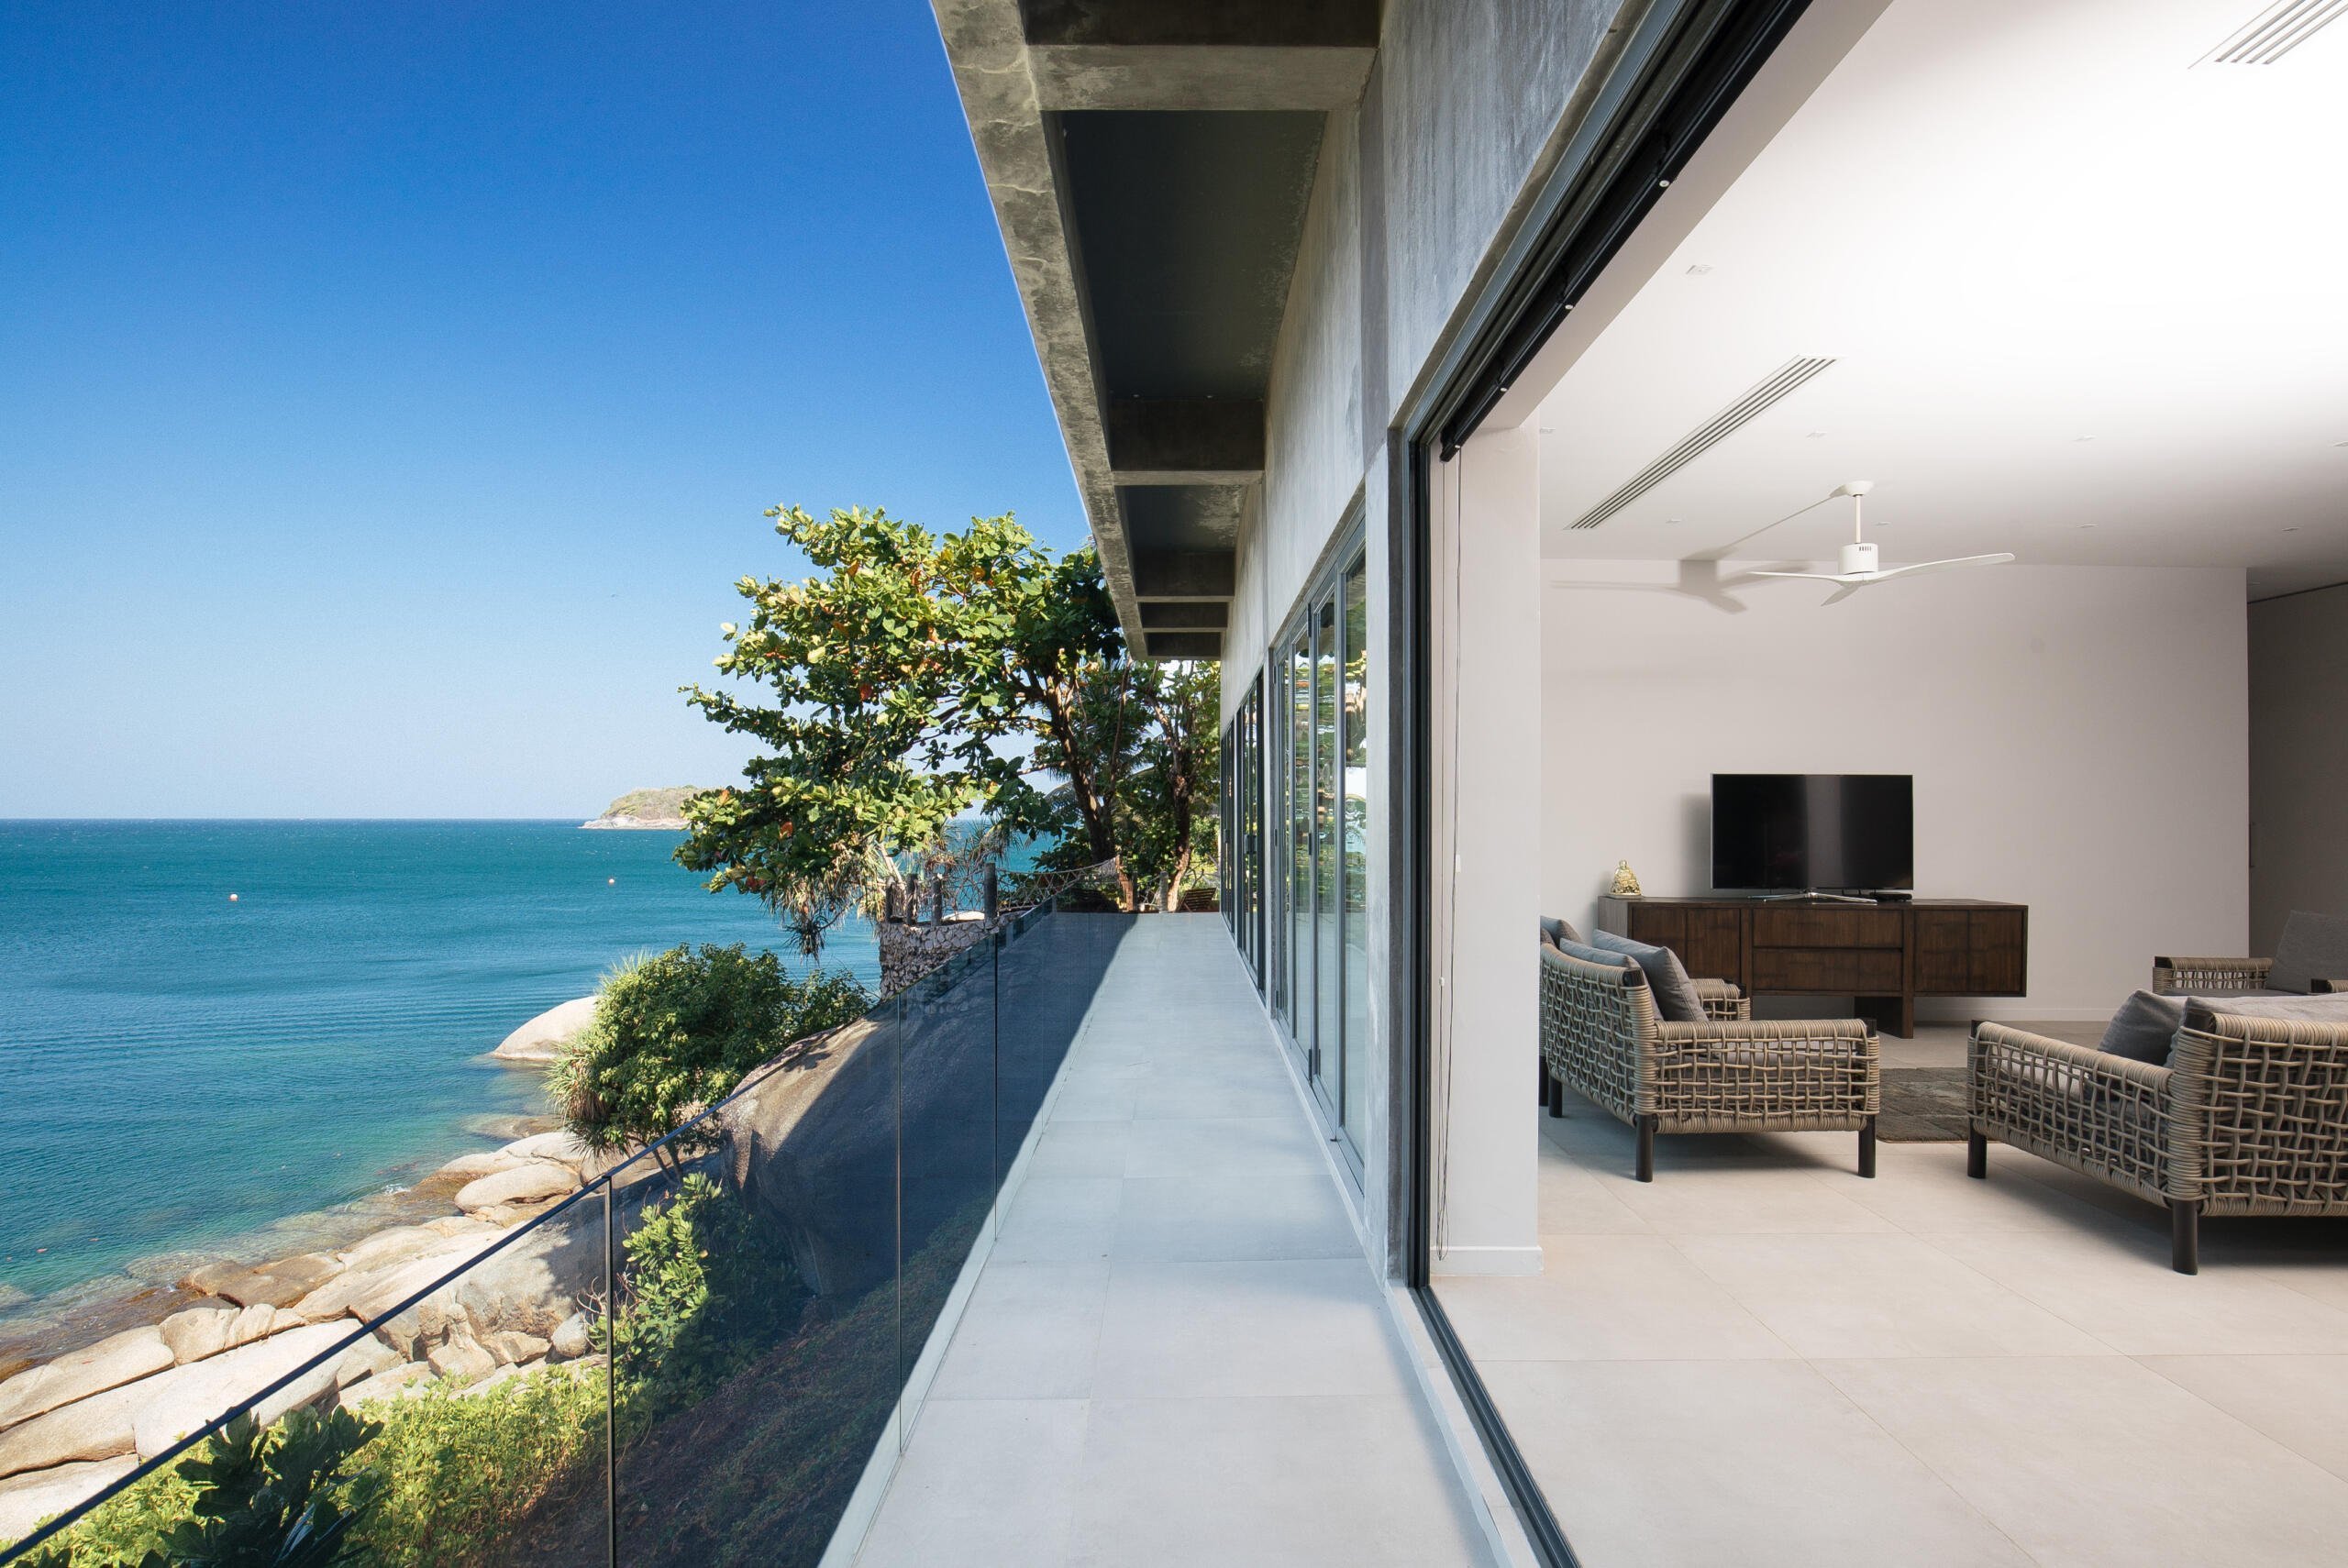 villa sunyata loft terrace overlooking the ocean